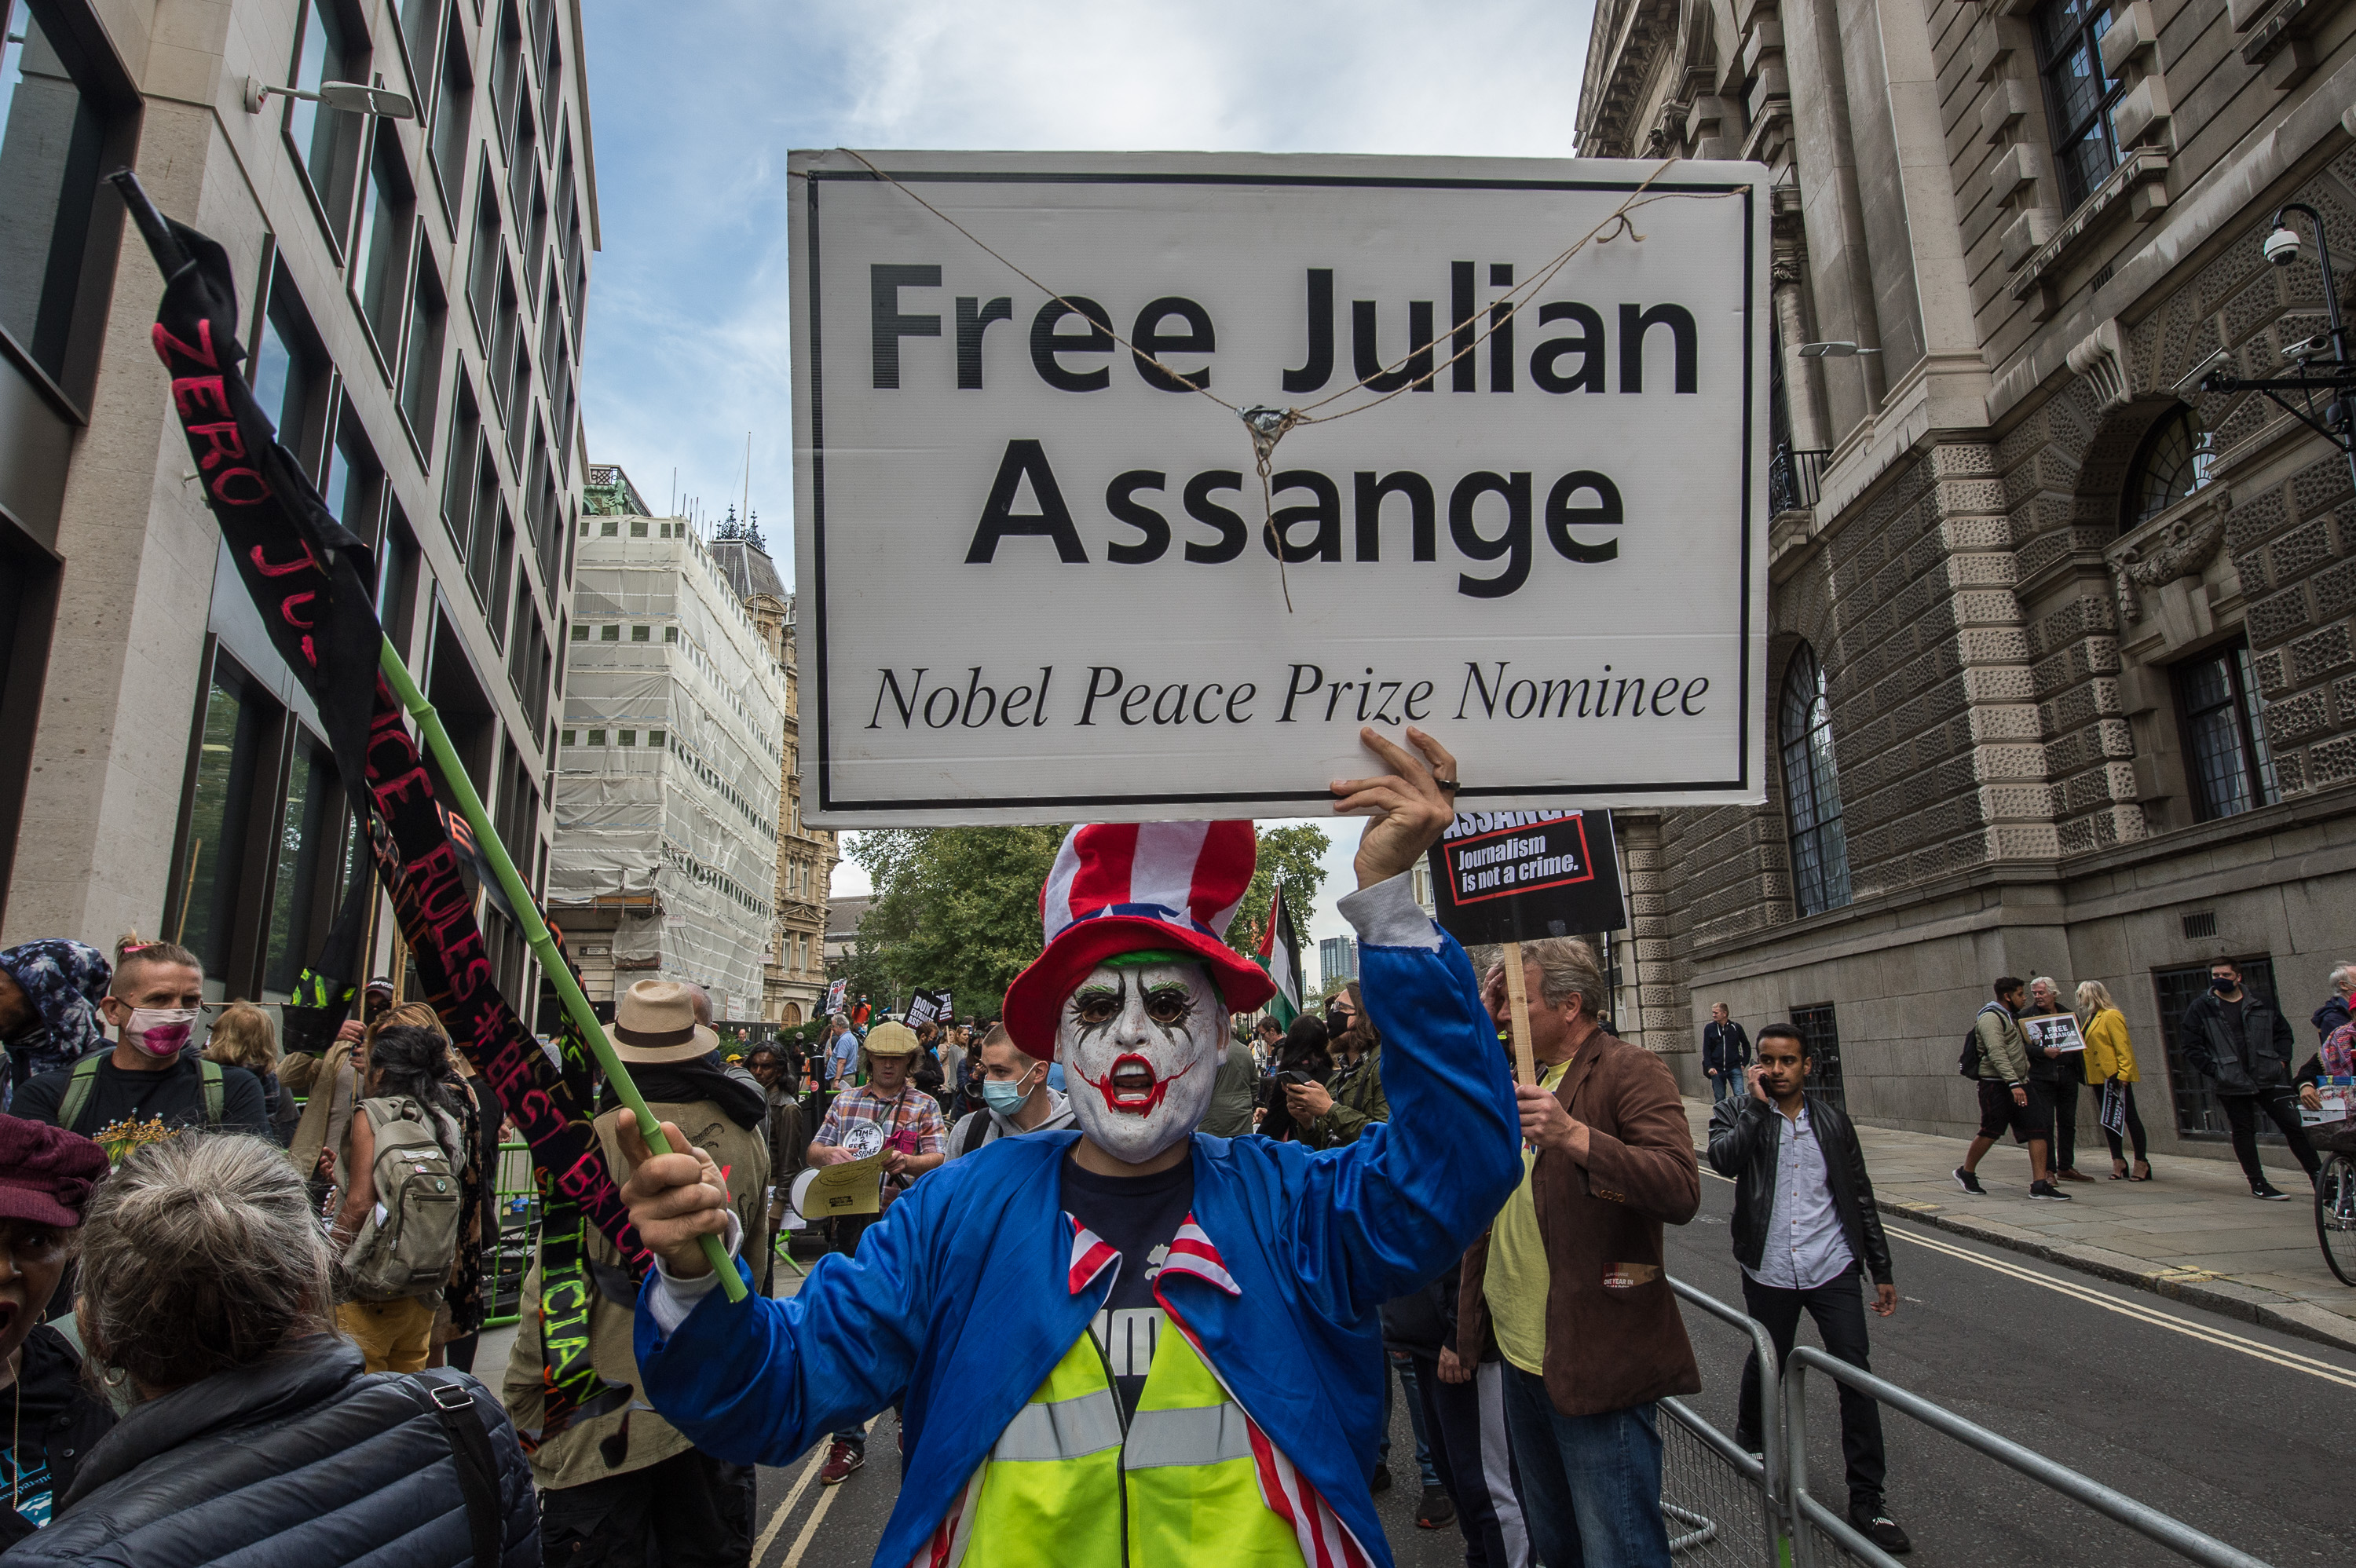 Assange Court Report September 10: Morning